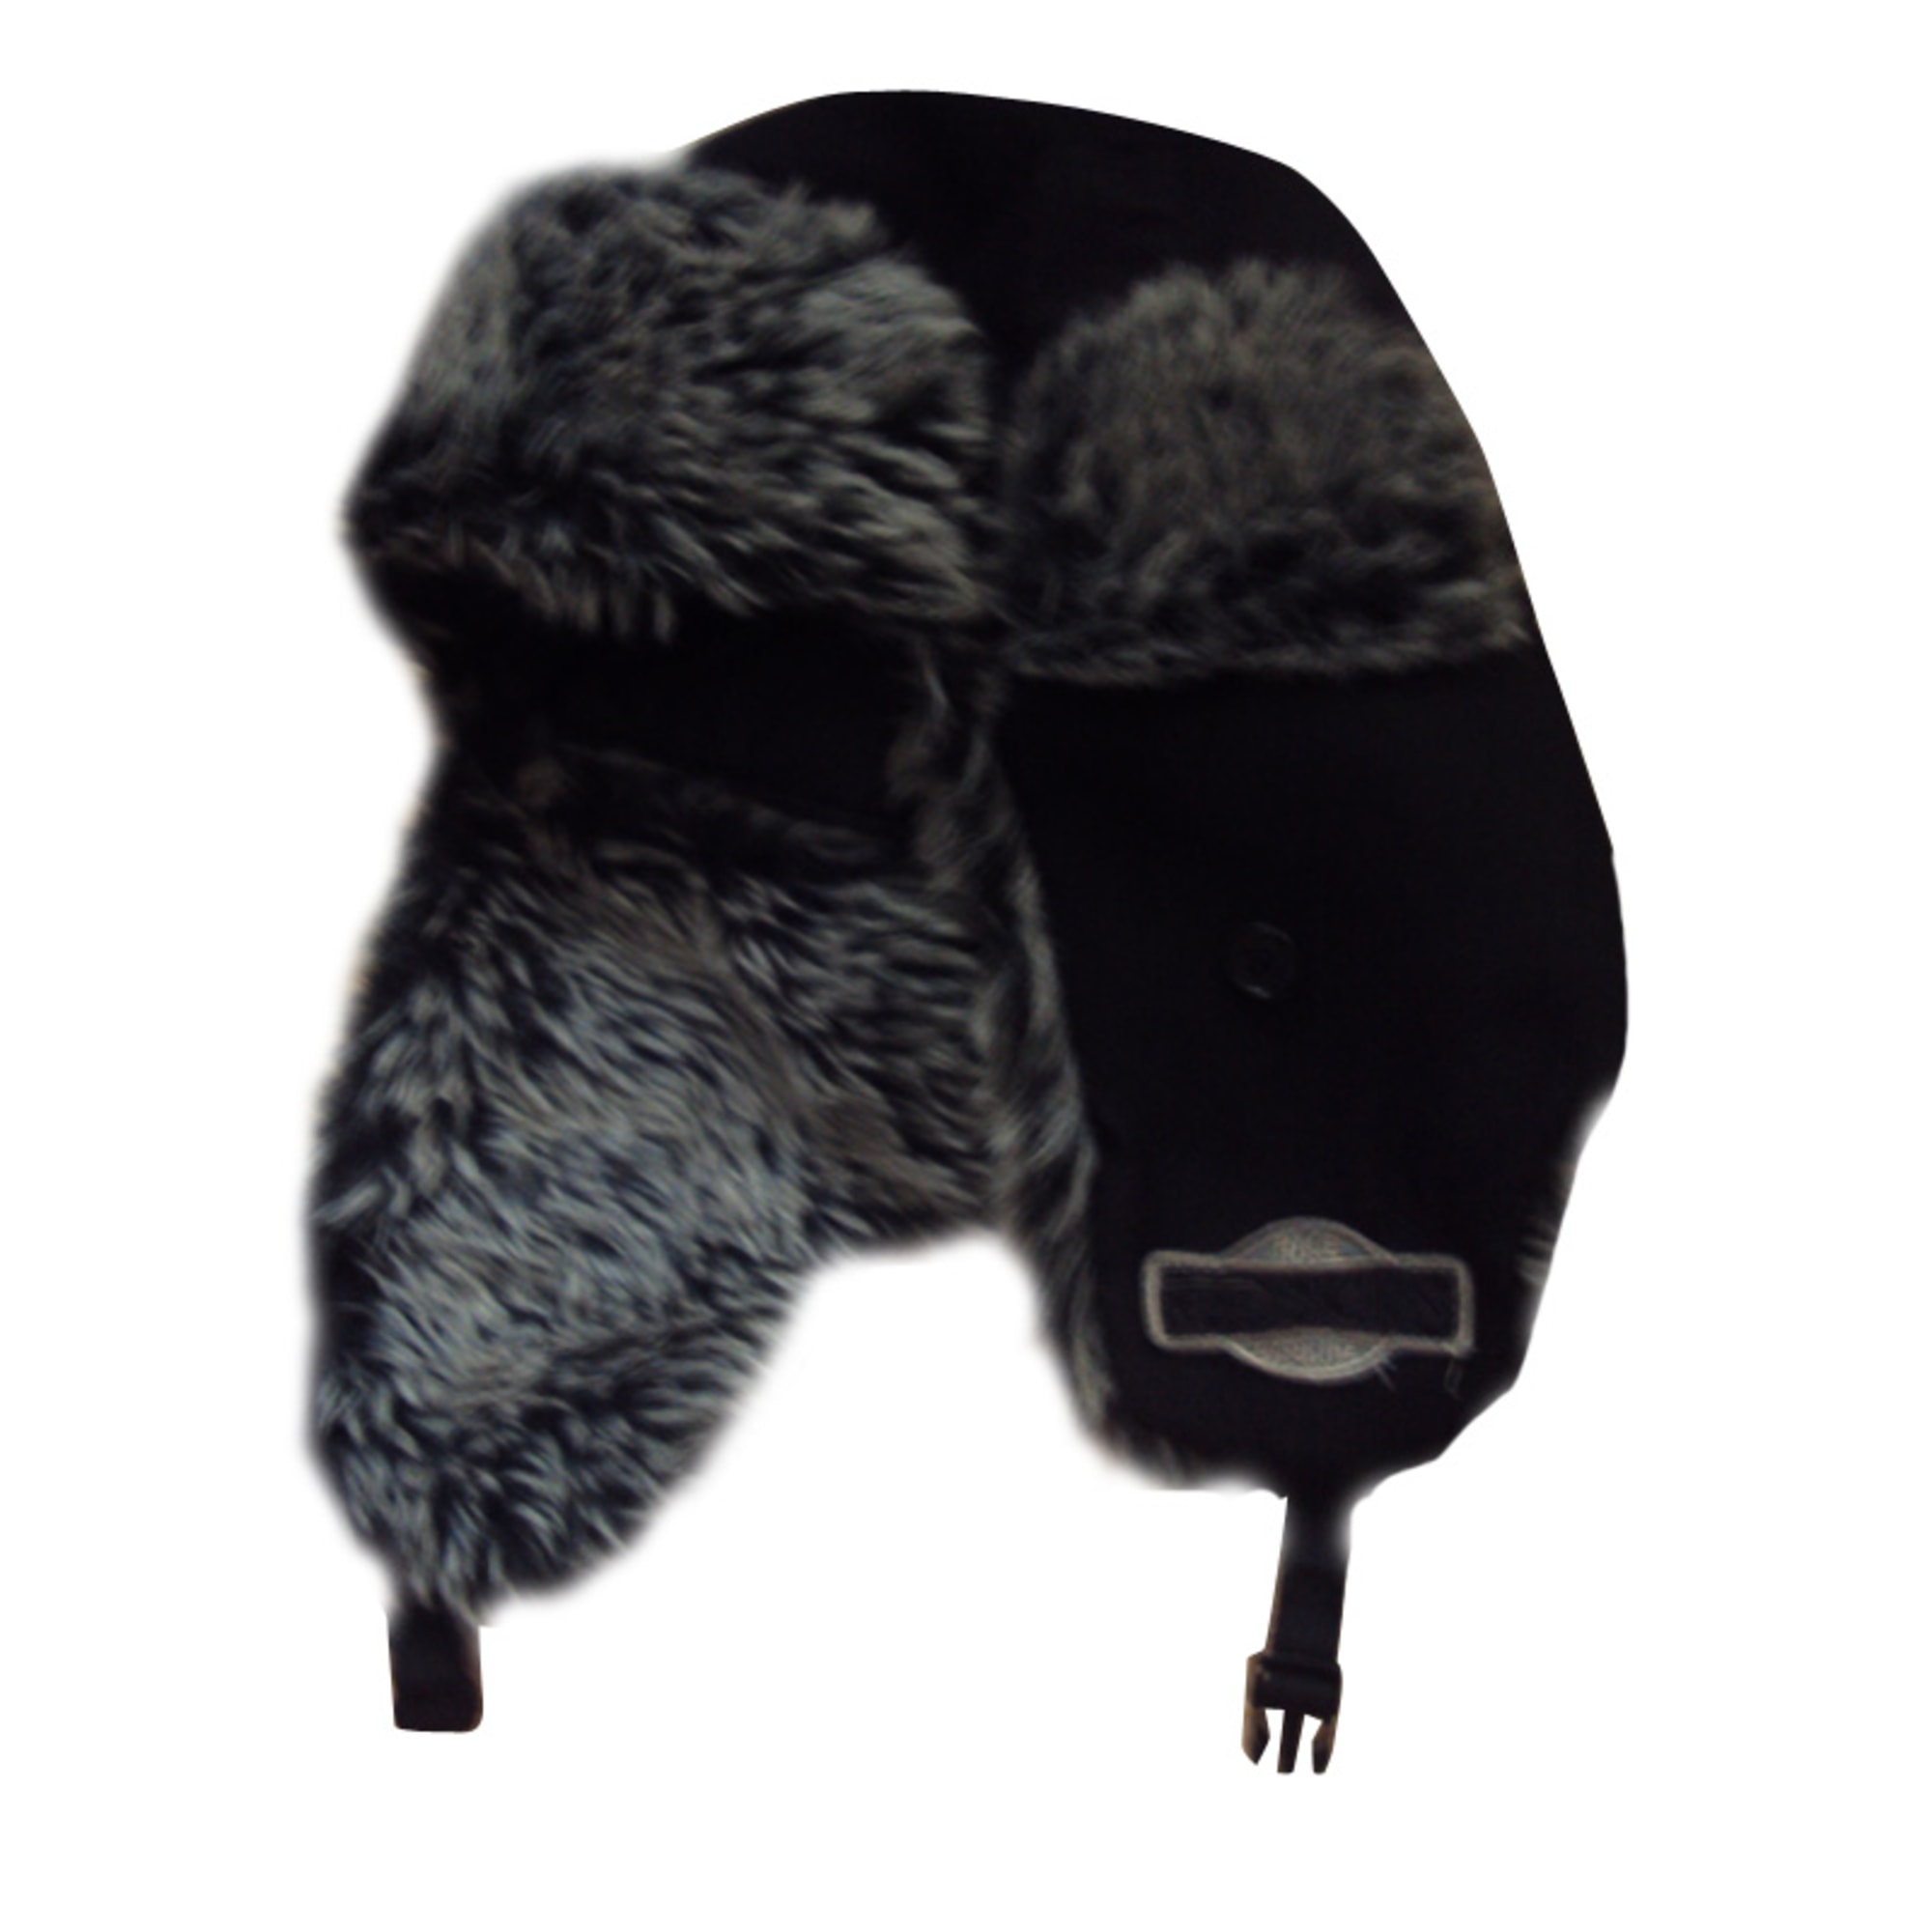 Bonnet REDSKINS 58 noir vendu par Farah 26457034 - 2009659